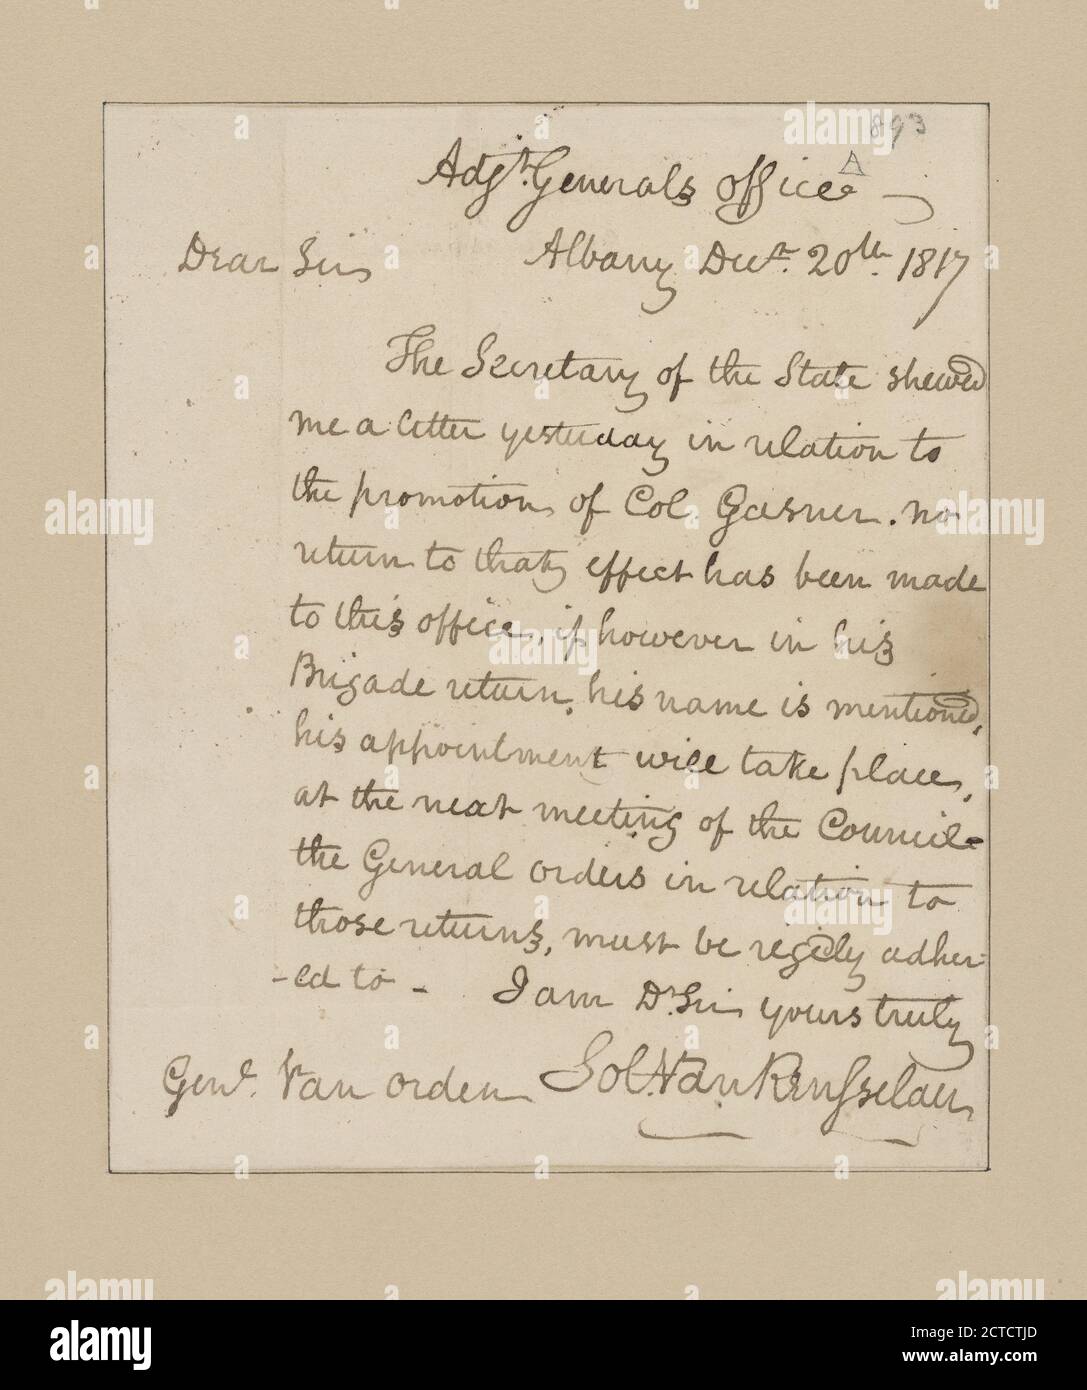 Van Rensselaer, Solomon. Albany. Adjt. General's Office. To Major General Peter Van Orden, text, Documents, 1817 Stock Photo